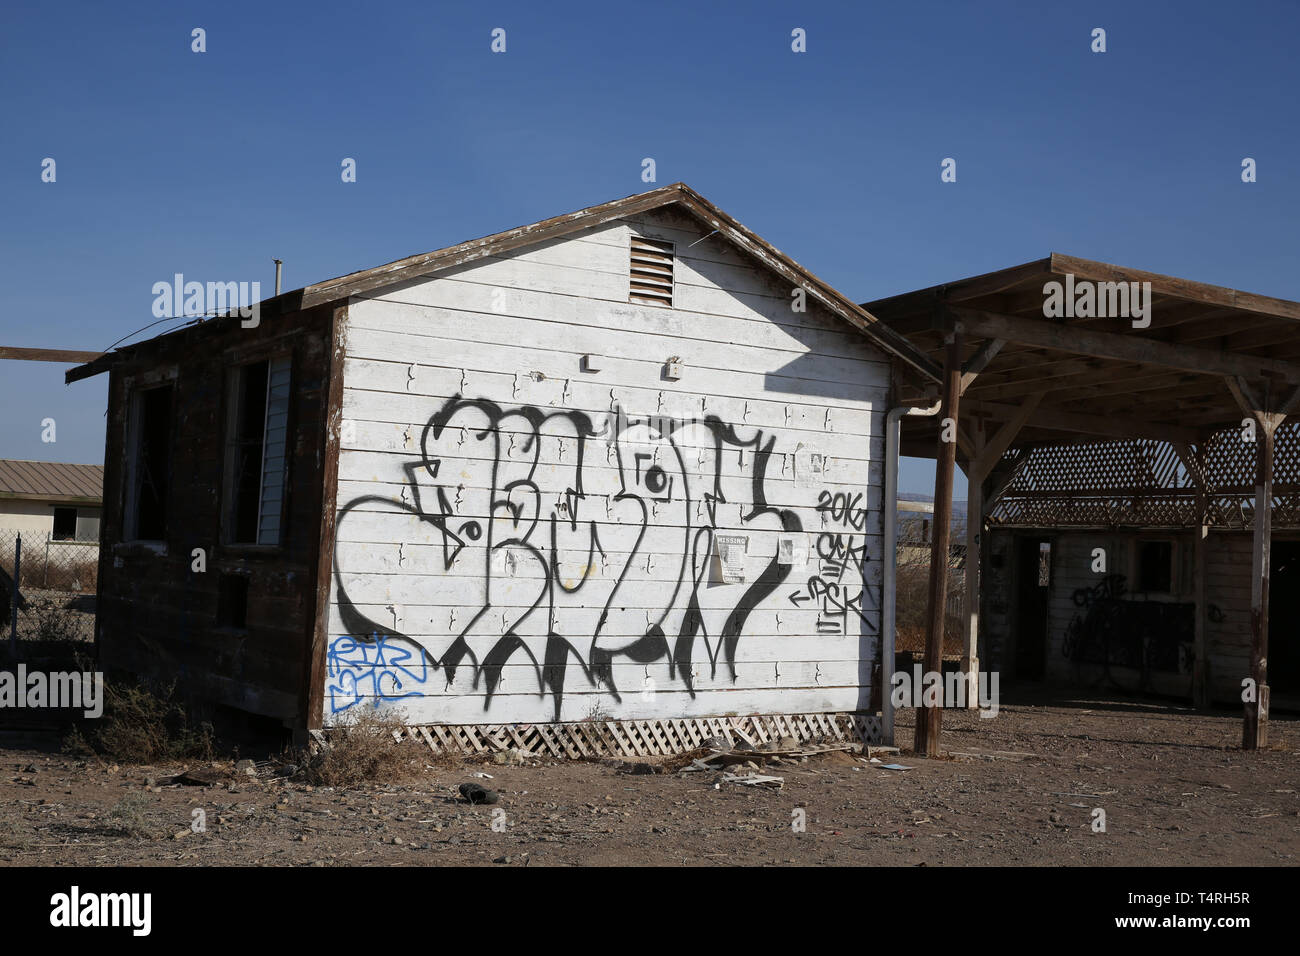 Bombay Beach, Californie, USA. 11Th Feb 2016. Couverts de graffitis bâtiments vides au bord de l'eau avant de Bombay Beach. Bombay Beach est une ville située dans la région de Imperial County, Californie du Sud. Il est situé sur le lac Salton et communautaire est le plus bas en Amérique, situé à 223 pieds (68 m) au-dessous du niveau de la mer. La population était de 295 au recensement de 2010. La Salton Sea est une solution saline, peu profond, le lac du rift endoréique situé directement sur la faille de San Andreas, principalement dans le sud de la Californie et de l'empire des vallées Coachella. Le point le plus profond de la mer est de 5 pi (1,5 m) plus élevé que la plus faible po Banque D'Images